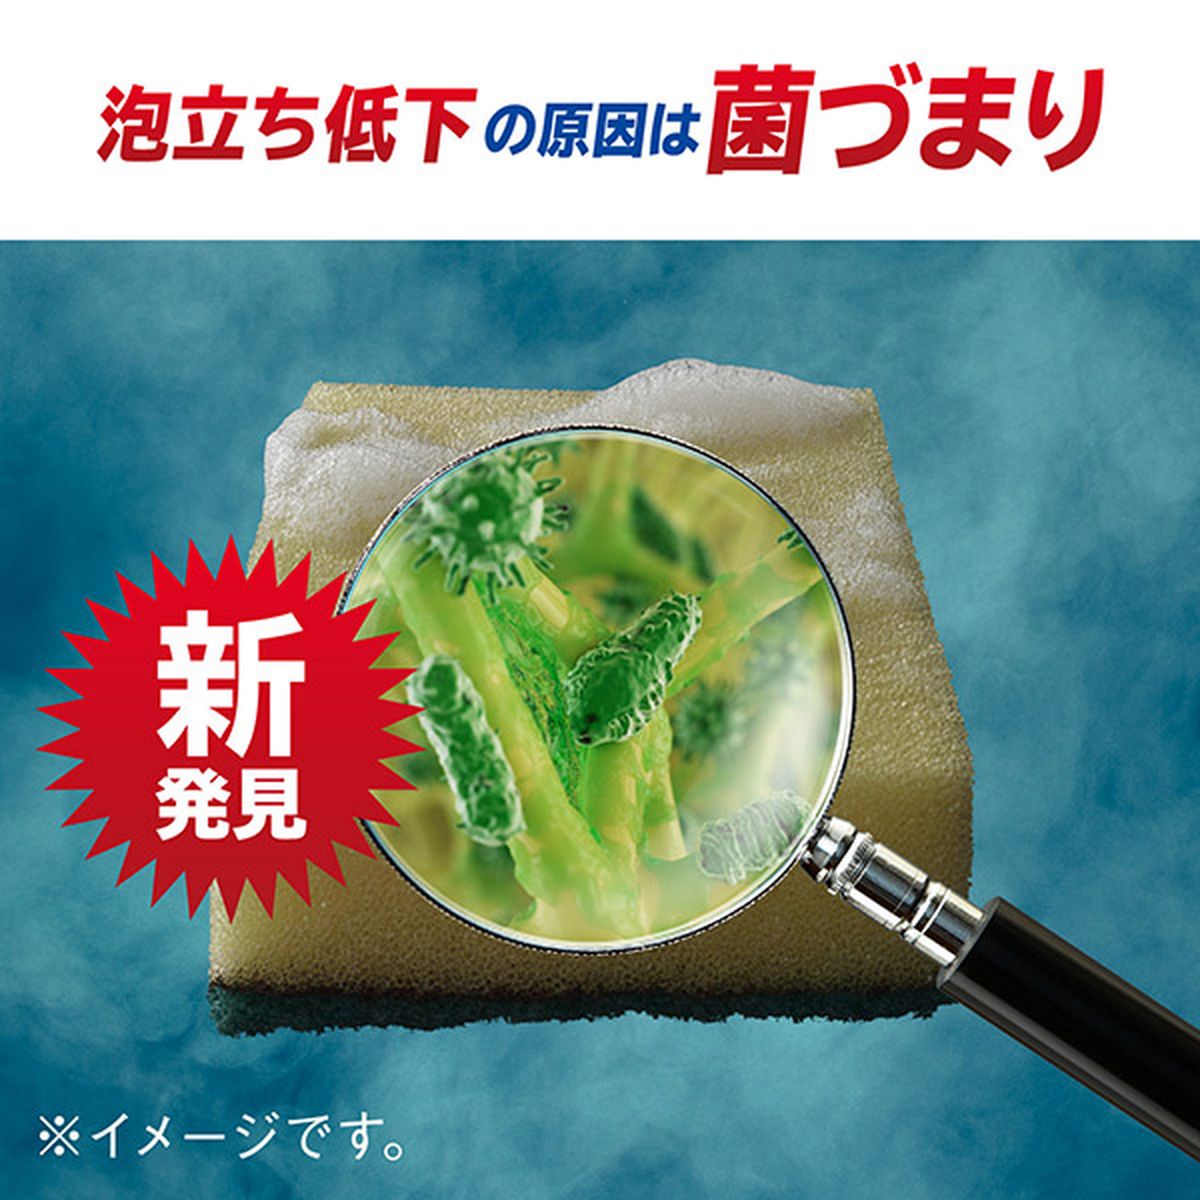 除菌ジョイ コンパクト 食器用洗剤 スパークリングレモンの香り 超特大 960ml×6袋